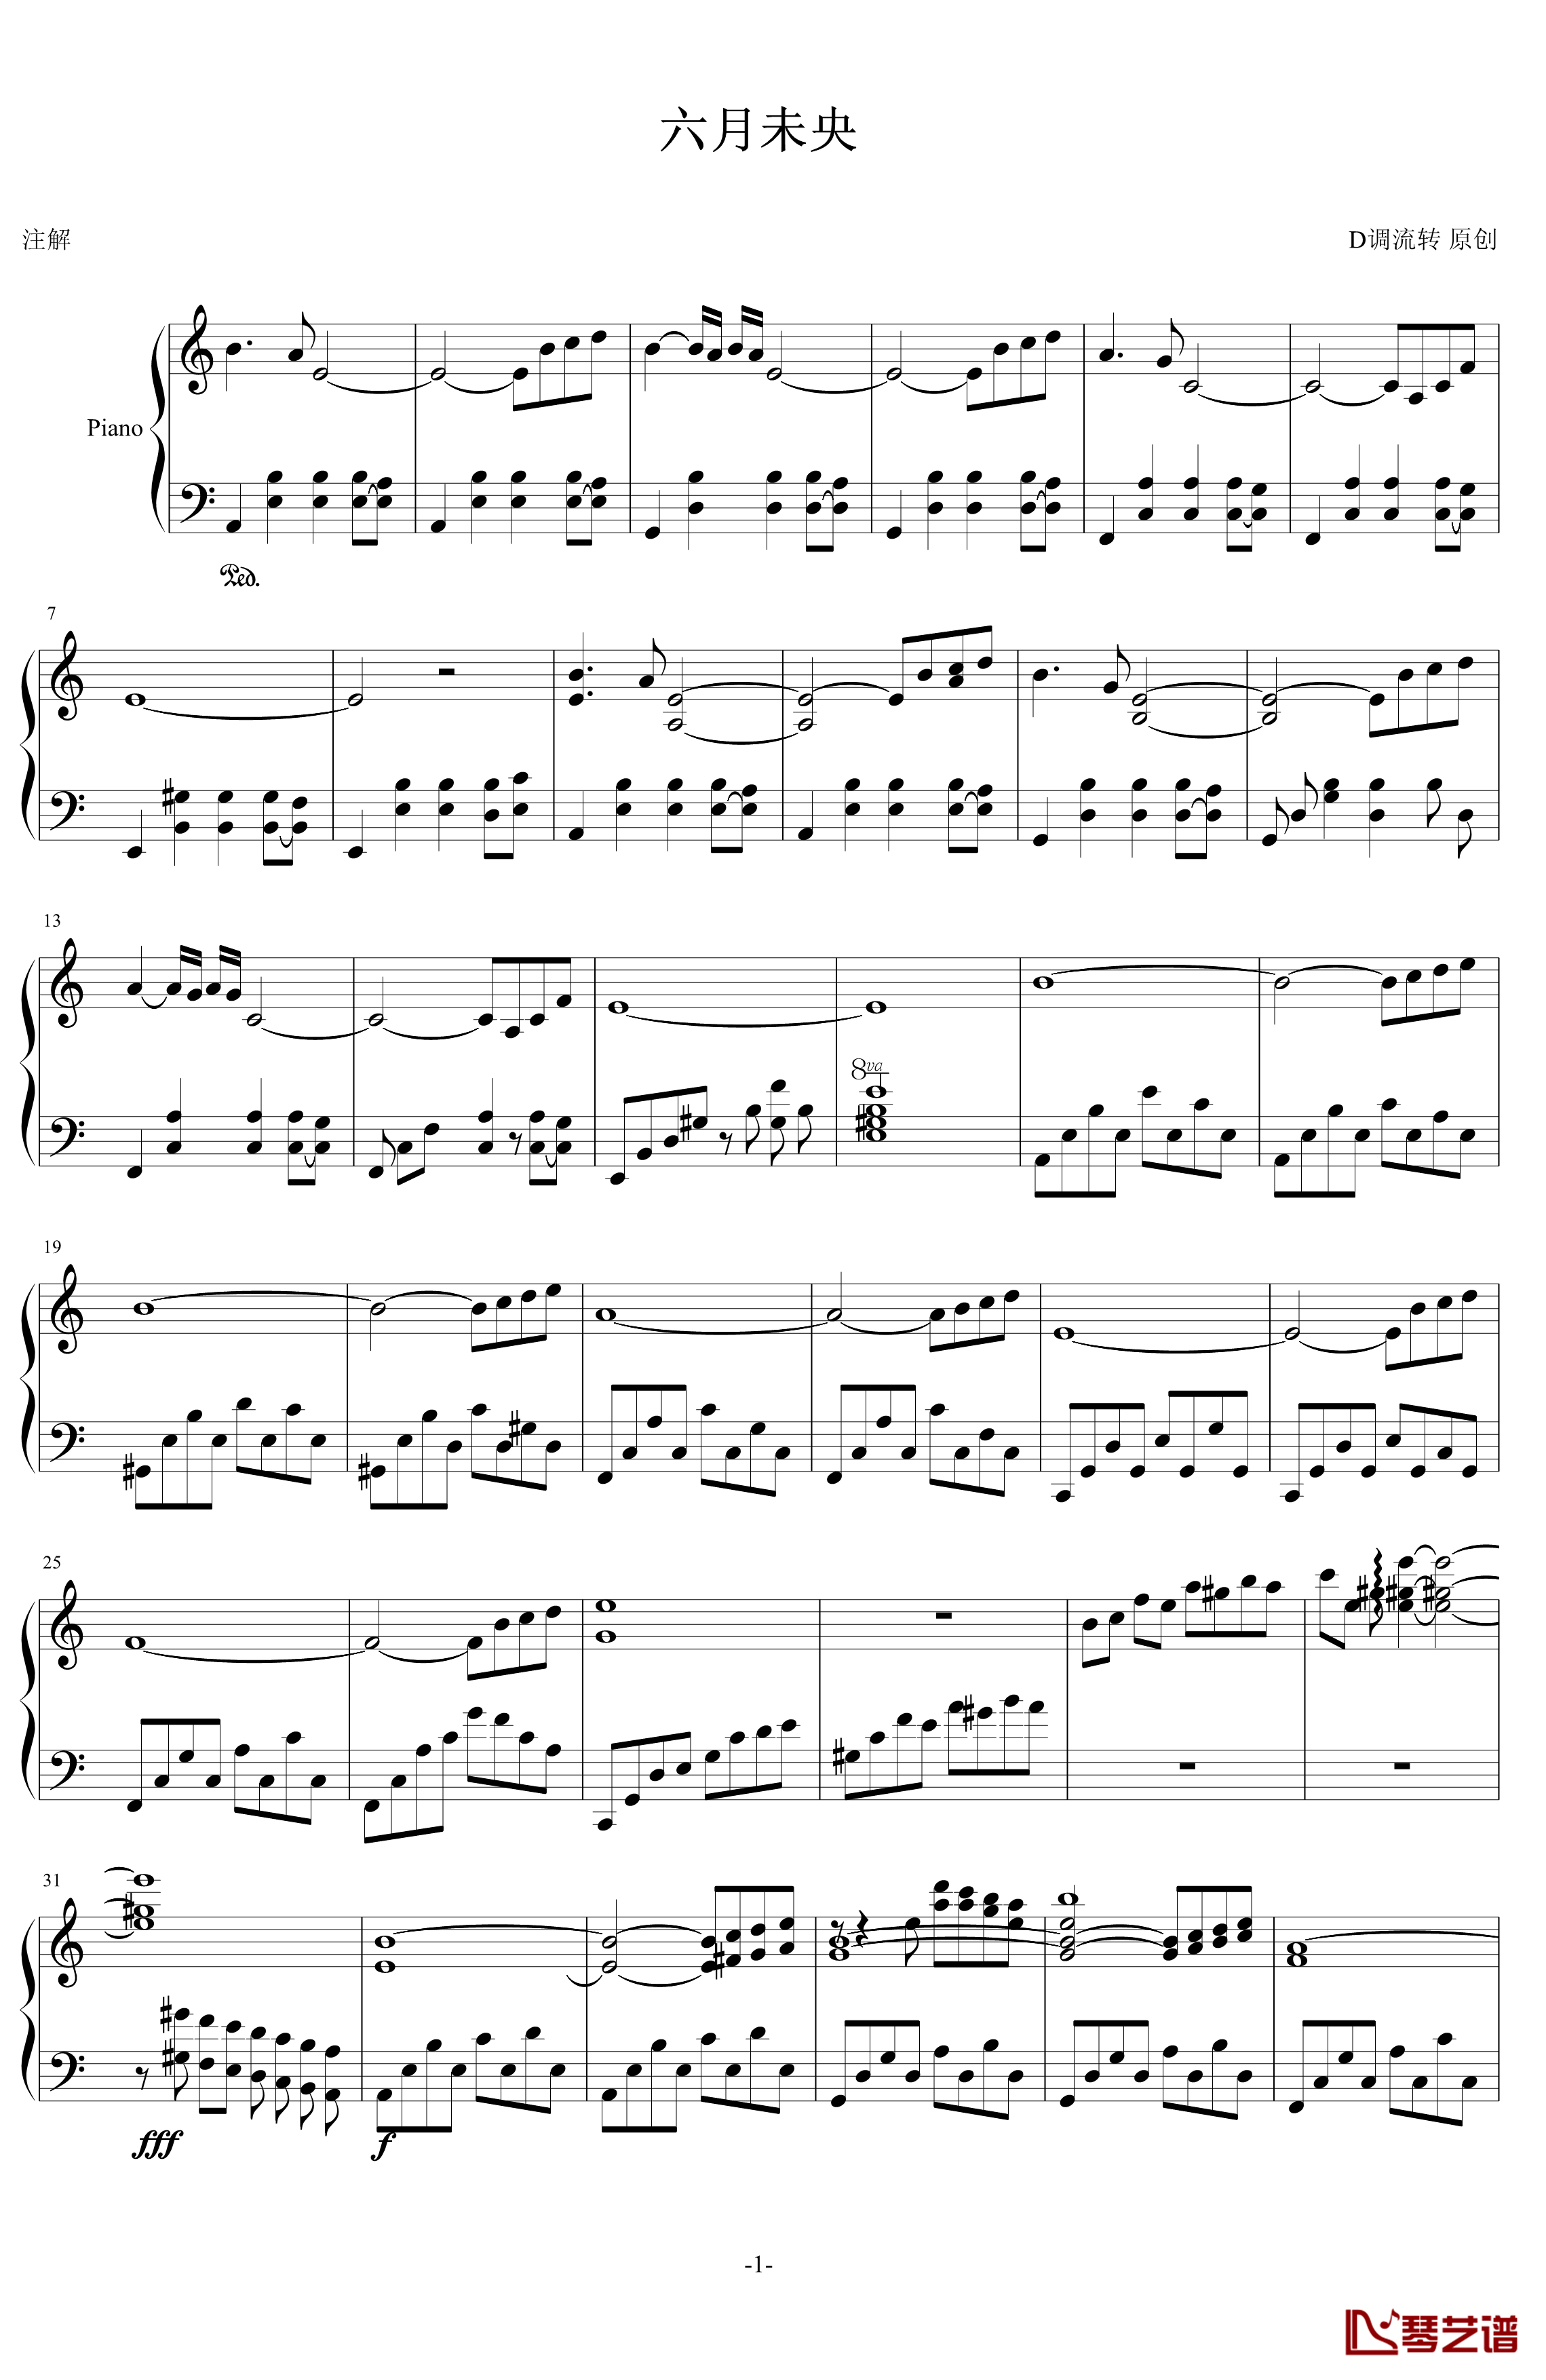 六月未央钢琴谱-liuzhuan1